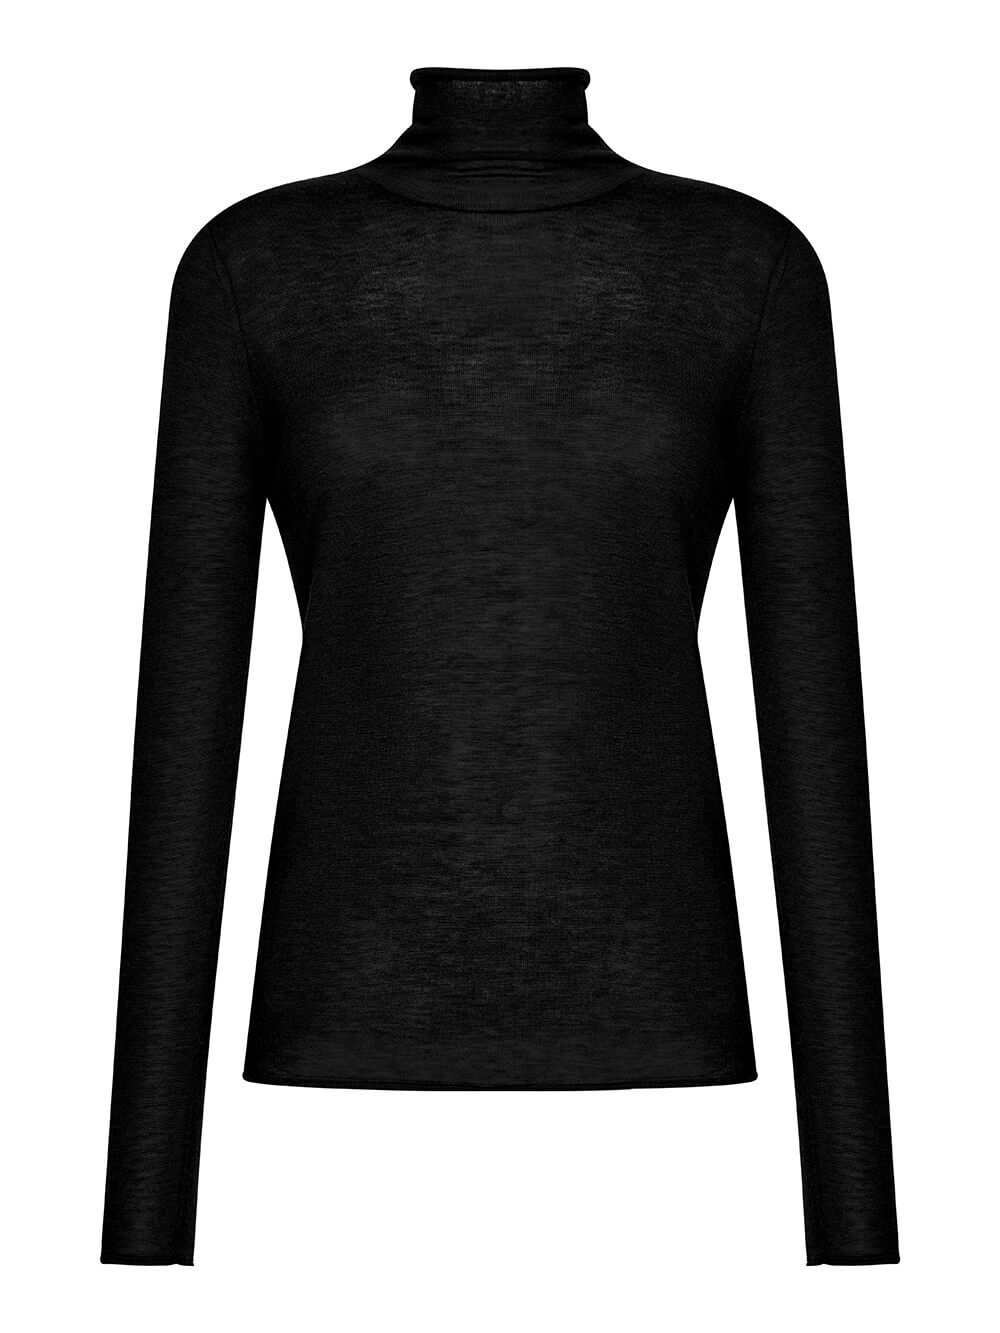 Женский свитер черного цвета из 100% шерсти